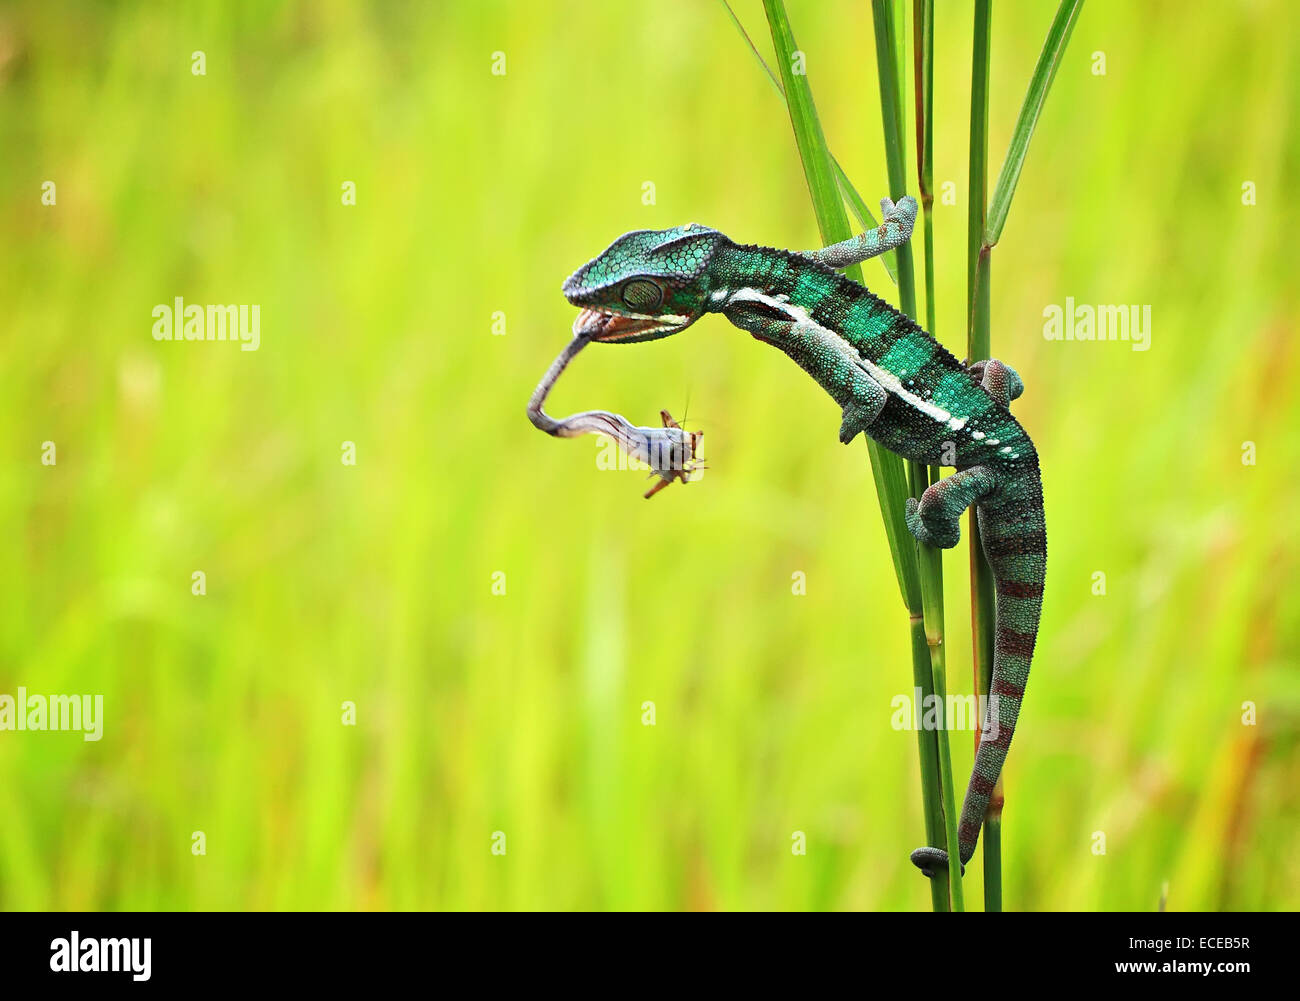 Chameleon chassant un insecte, Batam City, îles Riau, Indonésie Banque D'Images